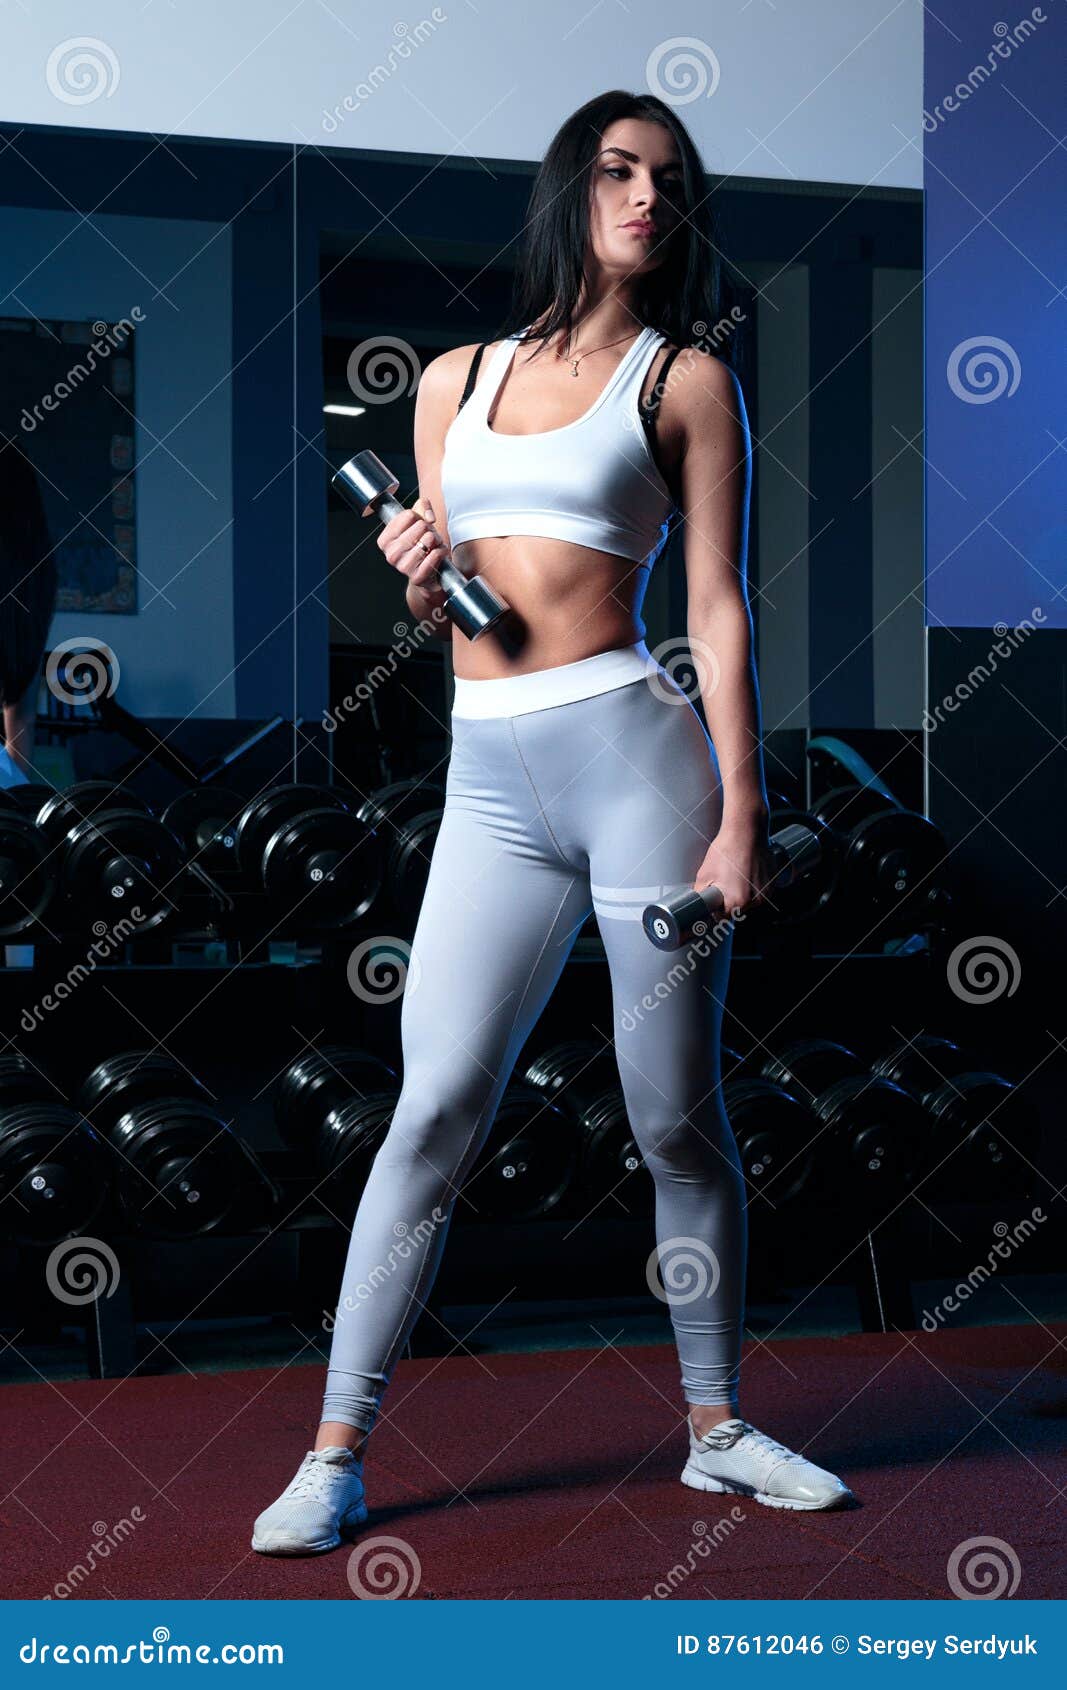 female brunette sexy leggings short t shirt posing sport standing gym 87612046